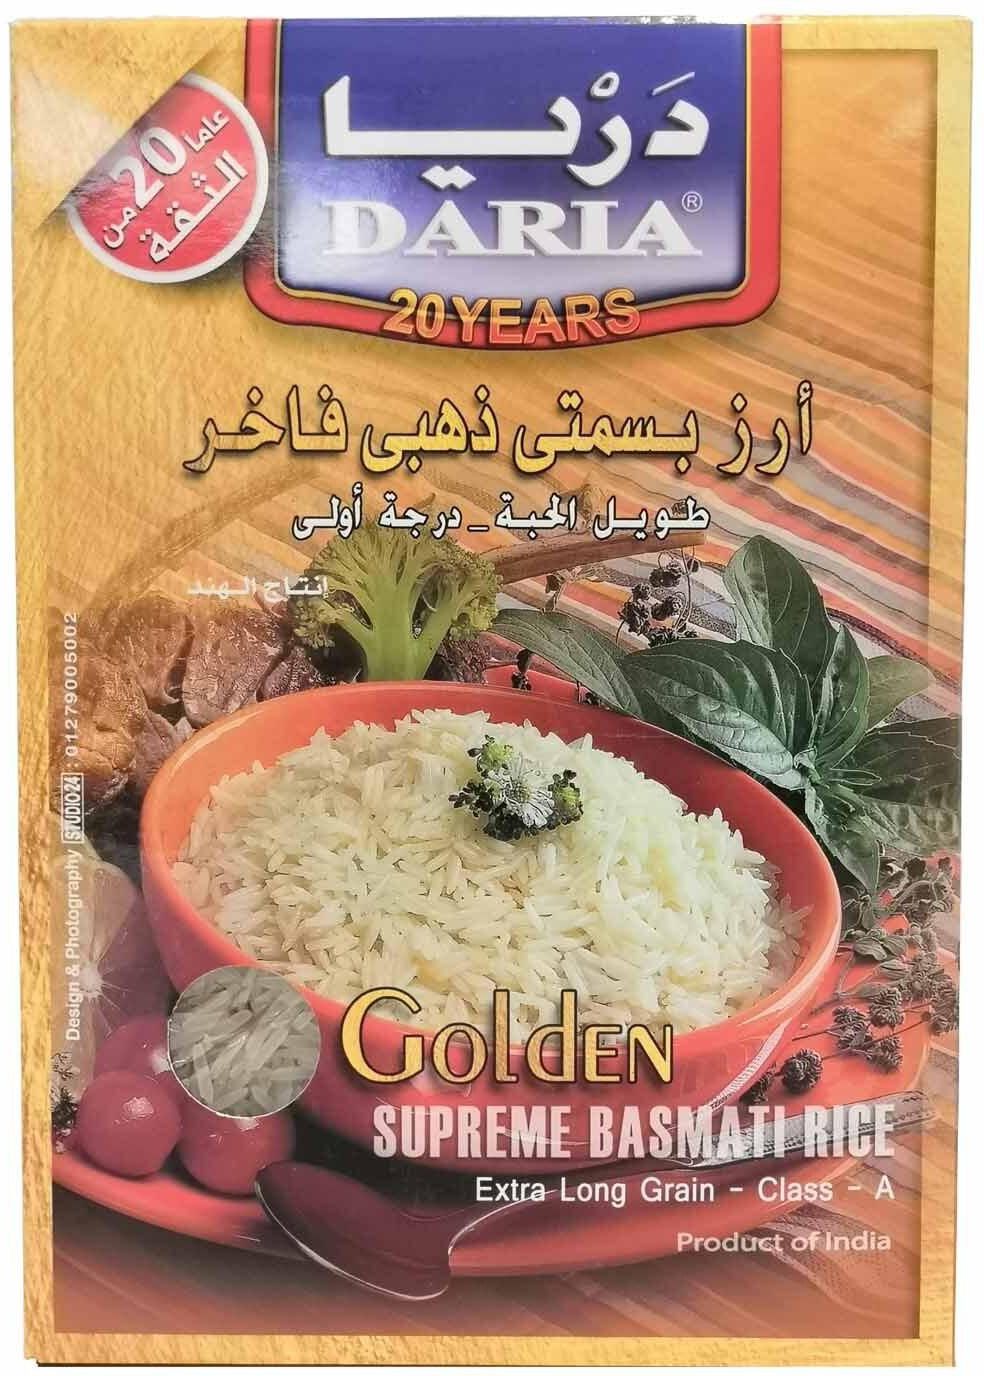 Daria Golden Basmati Rice - 1kg